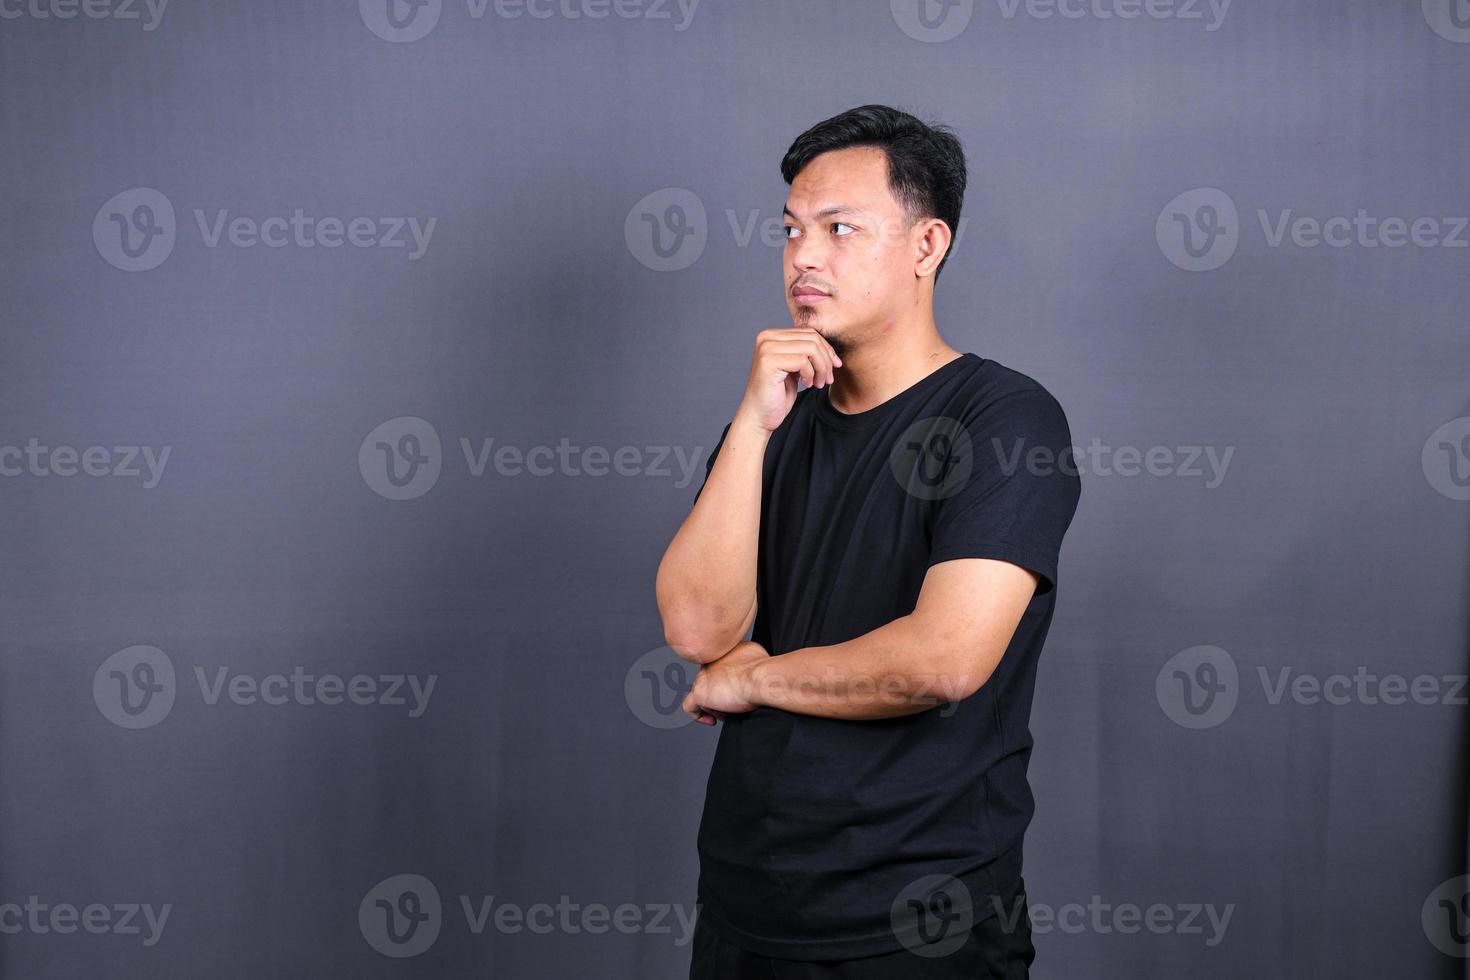 jovem asiático pensando em coisas ou ideia vestindo camiseta preta. fundo cinza isolado foto